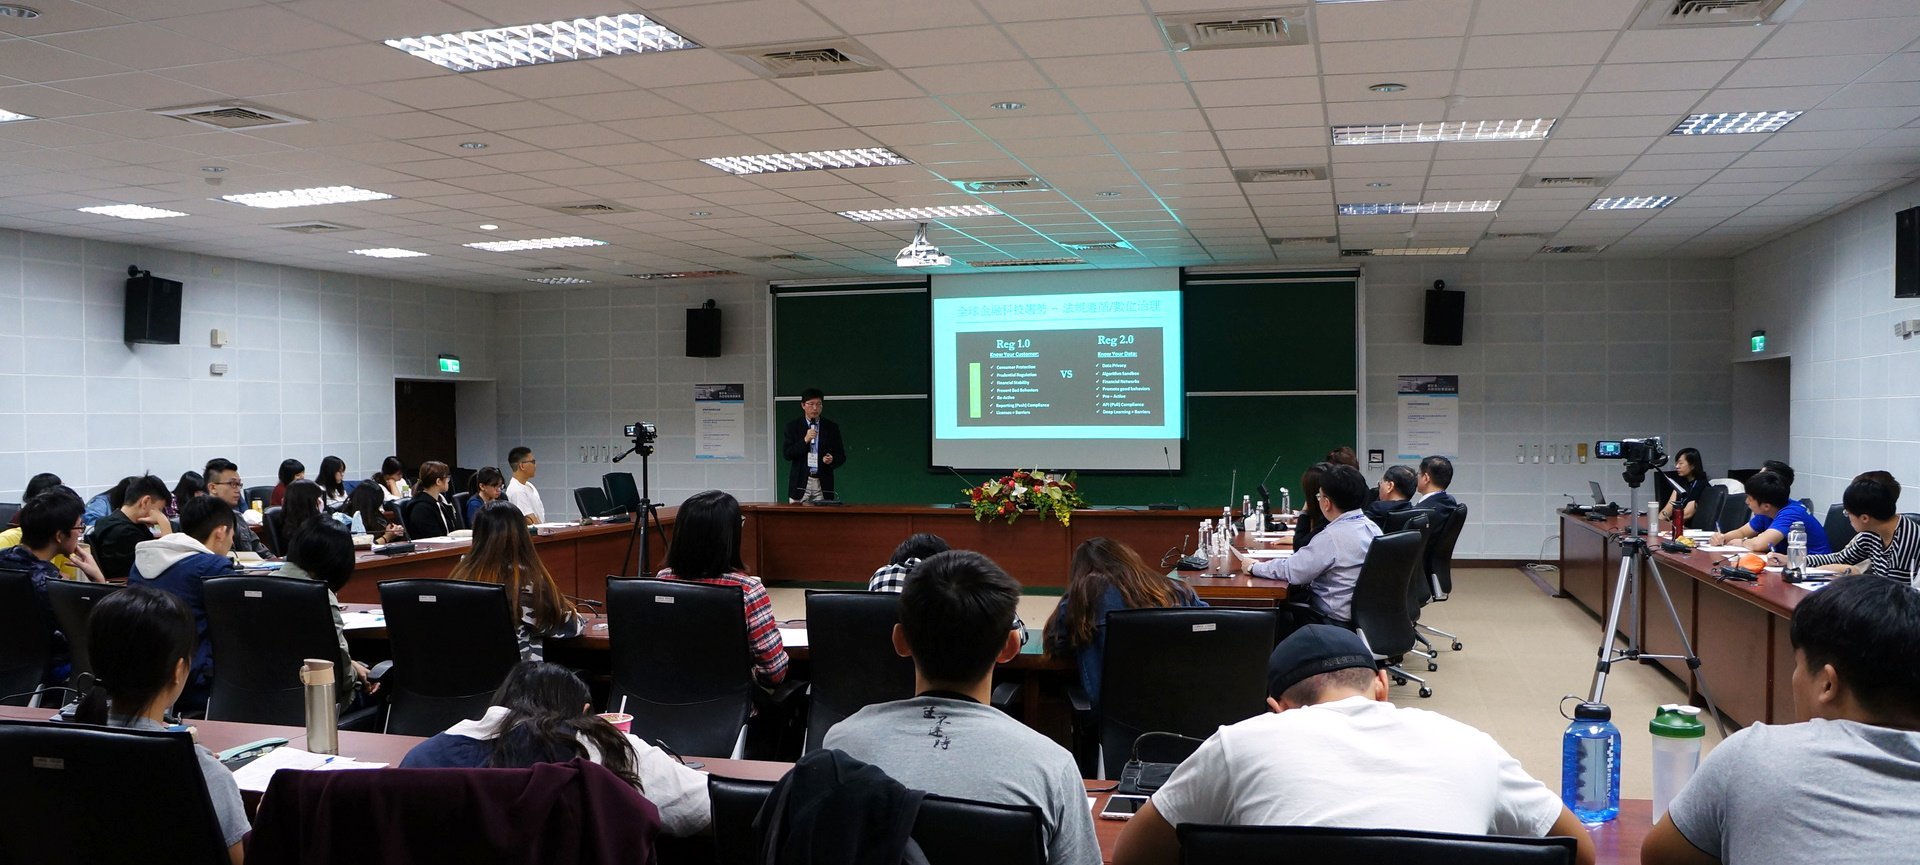 中正大學管理學院副院長張碩毅教授演講「金融科技與數位治理」